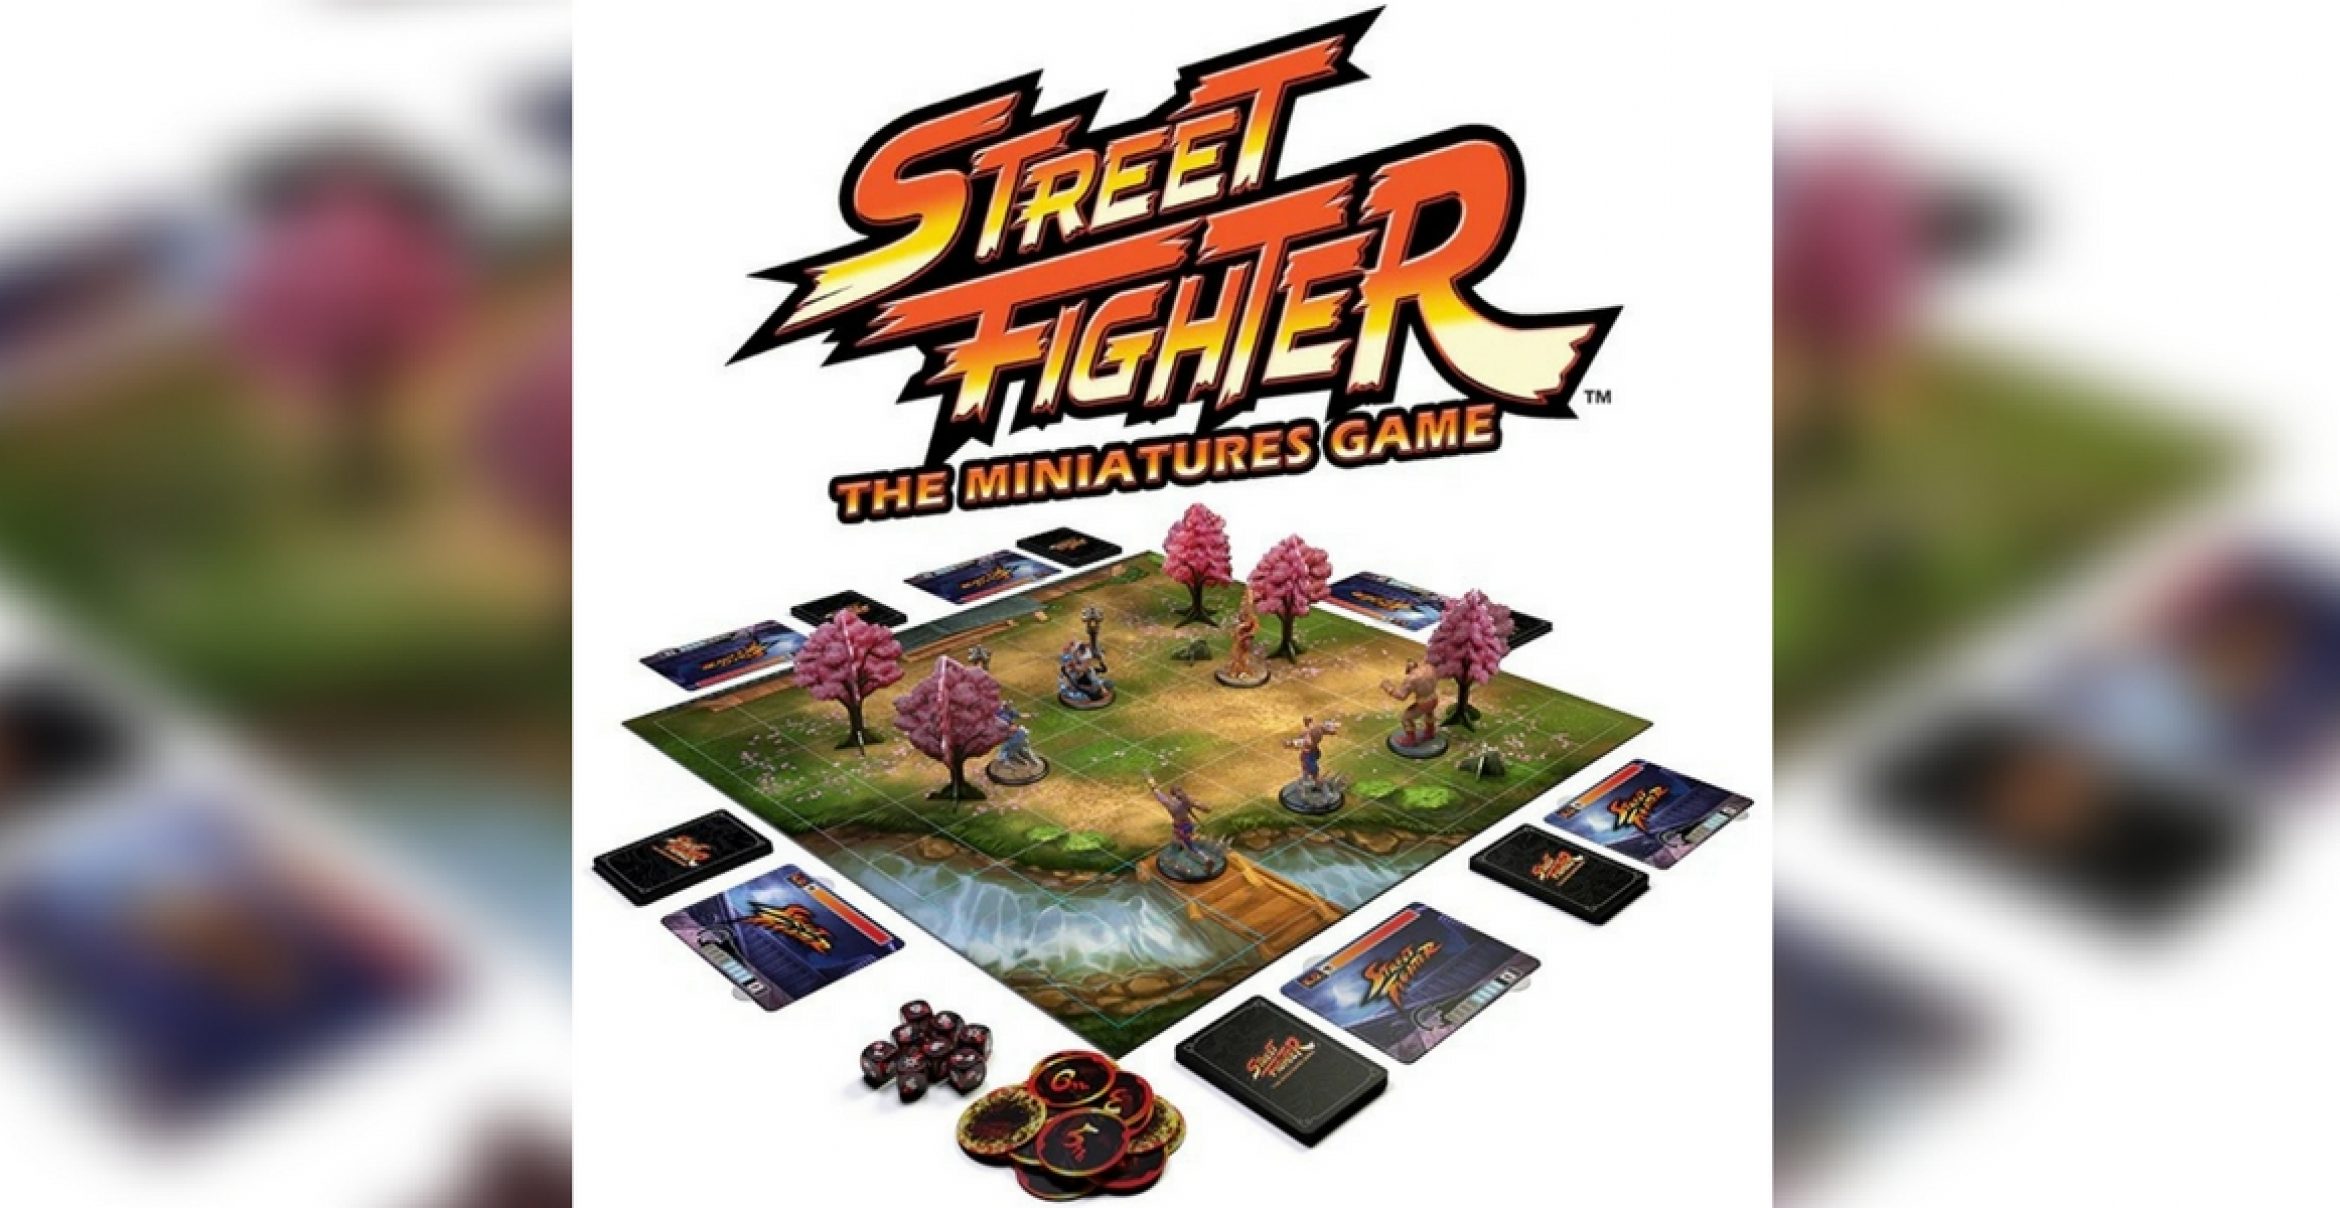 Made Our Day: “Street Fighter“ gibt es bald als Brettspiel